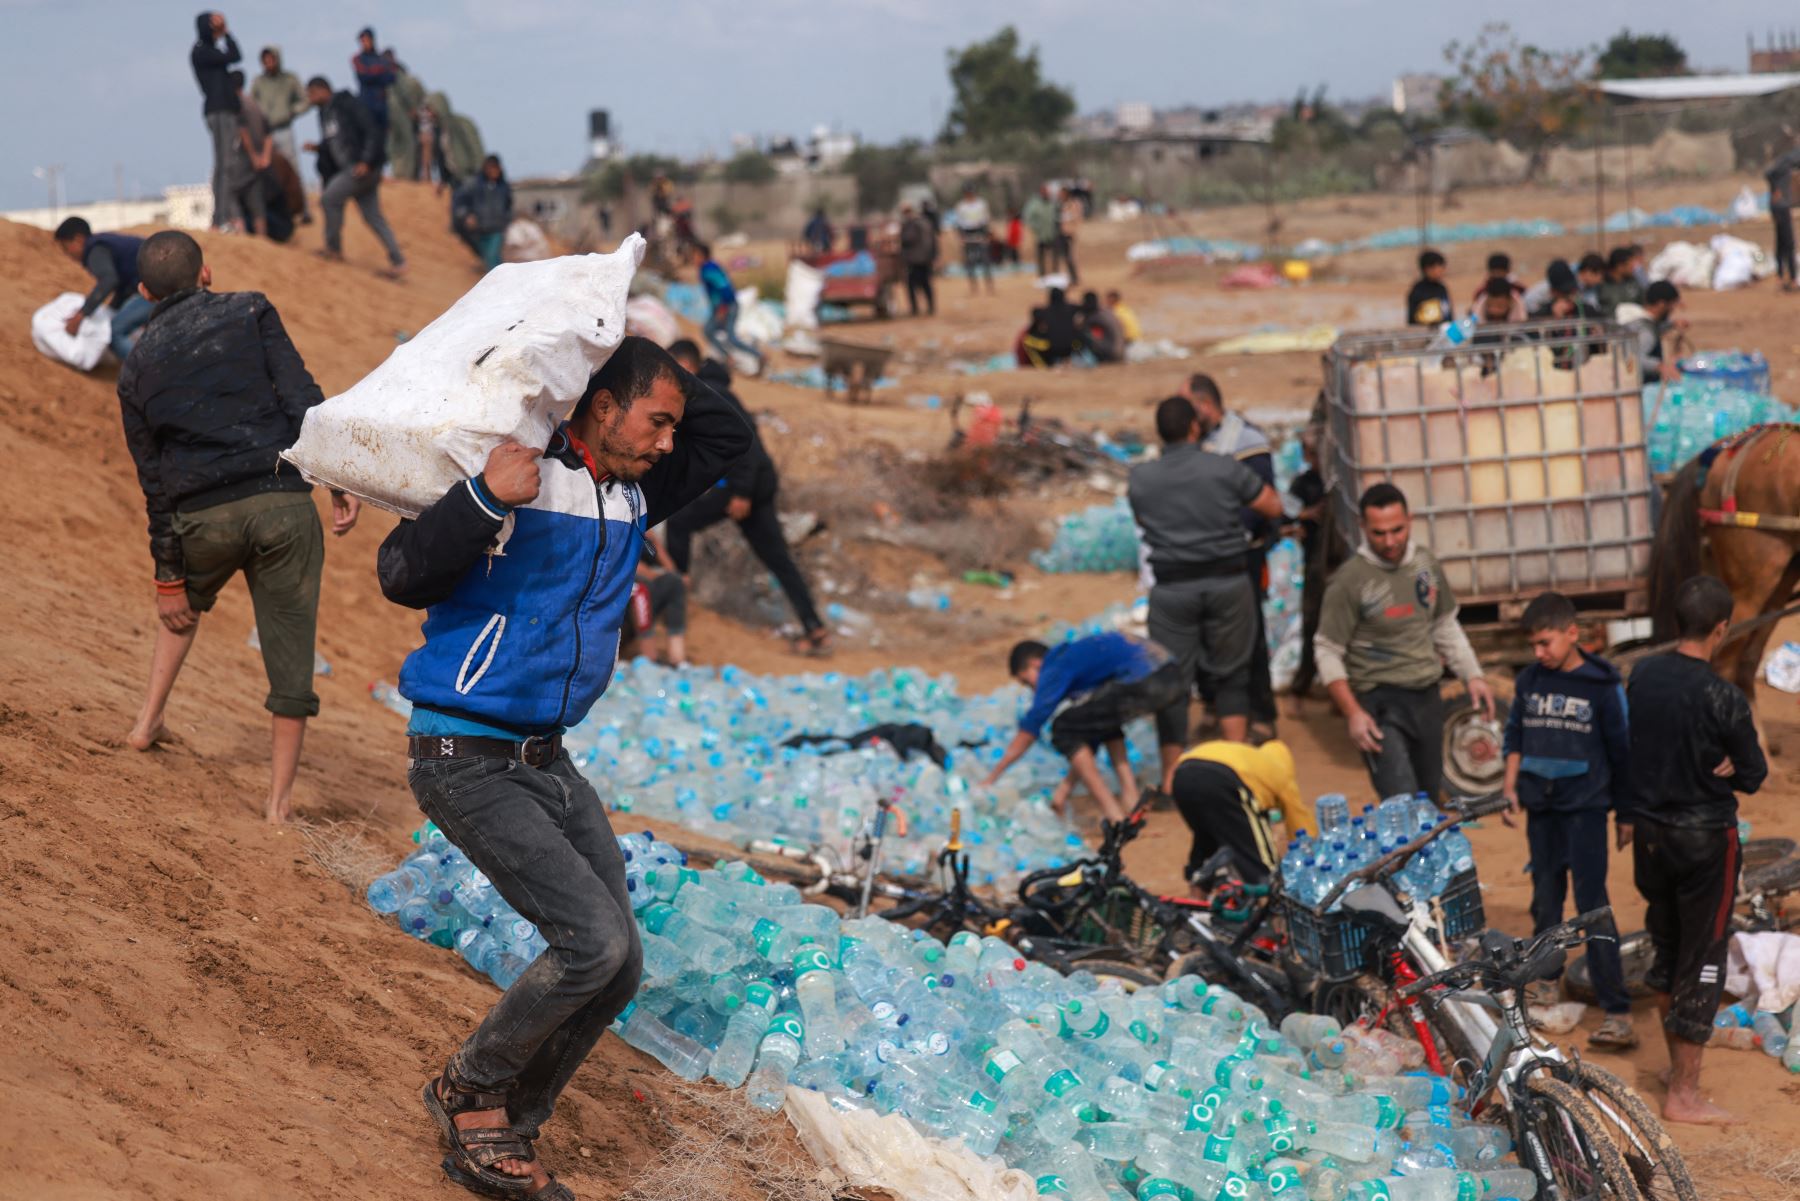 El Ministerio de Sanidad gazatí alertó de la creciente escasez de suministros básicos como agua y comida en el lado palestino del cruce de Rafah entre Egipto y el sur de la Franja de Gaza. Foto: AFP